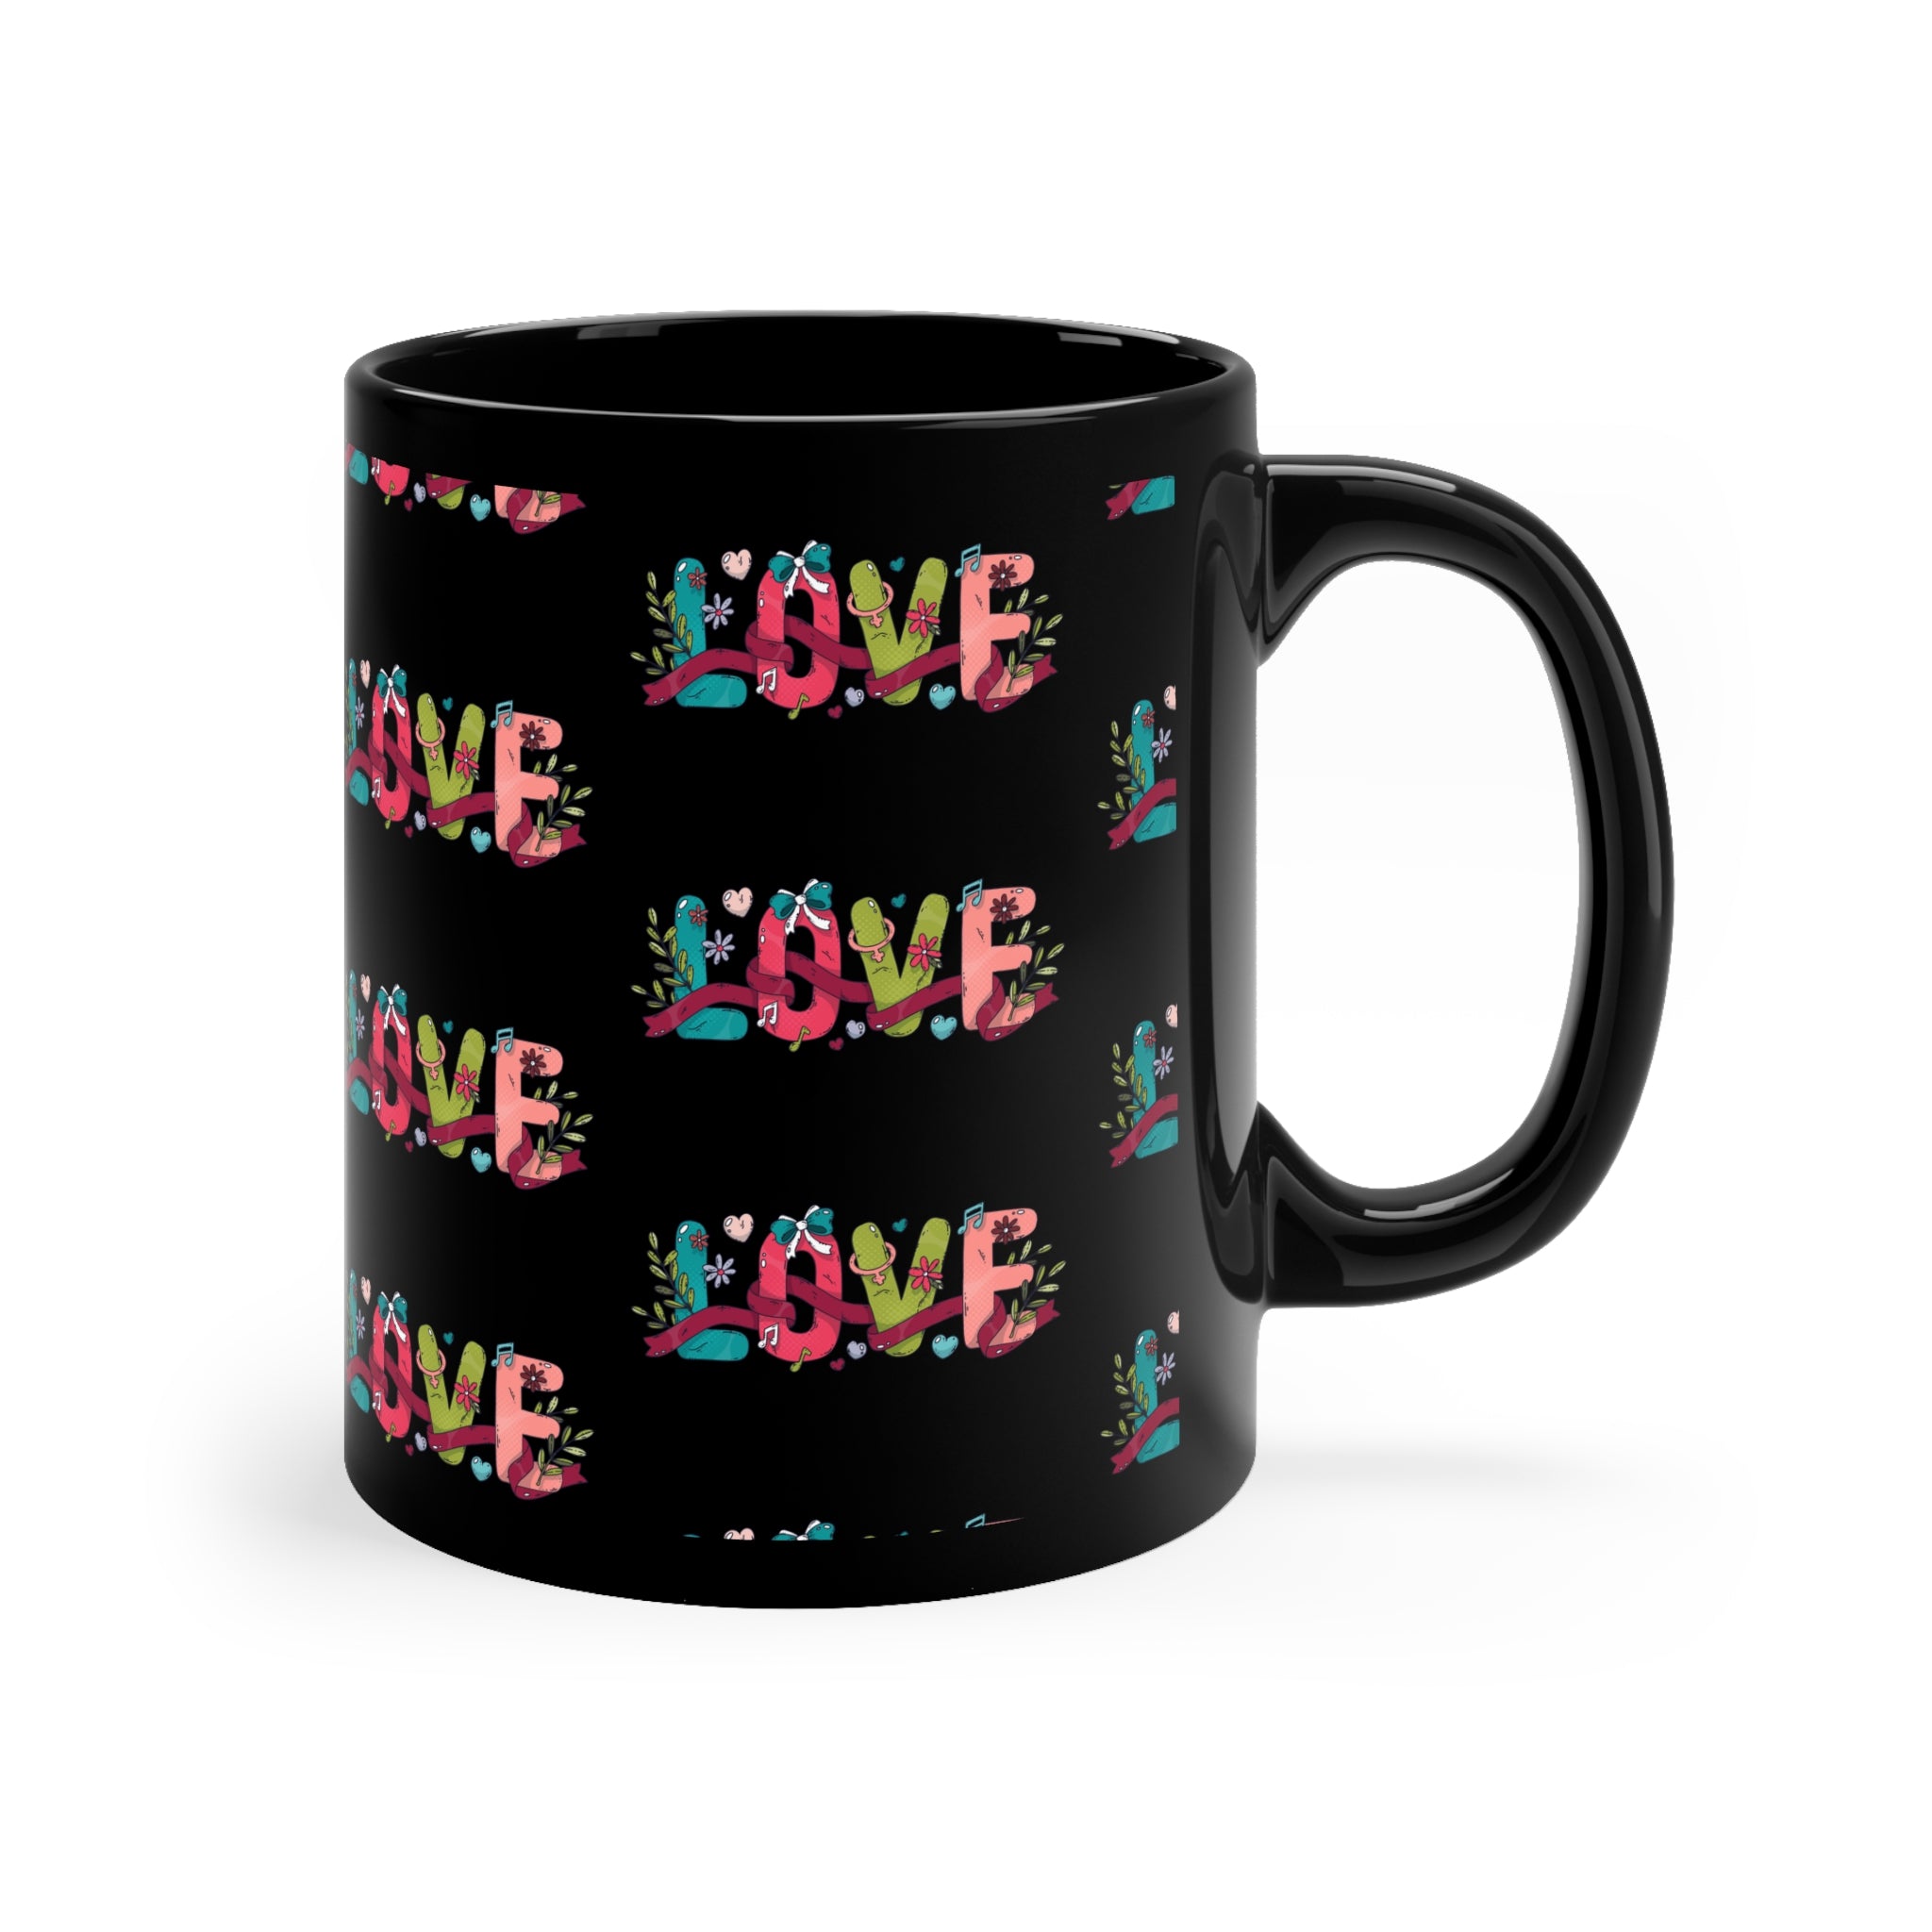 Charming 11oz Black Mug with Adorable Love-themed Design